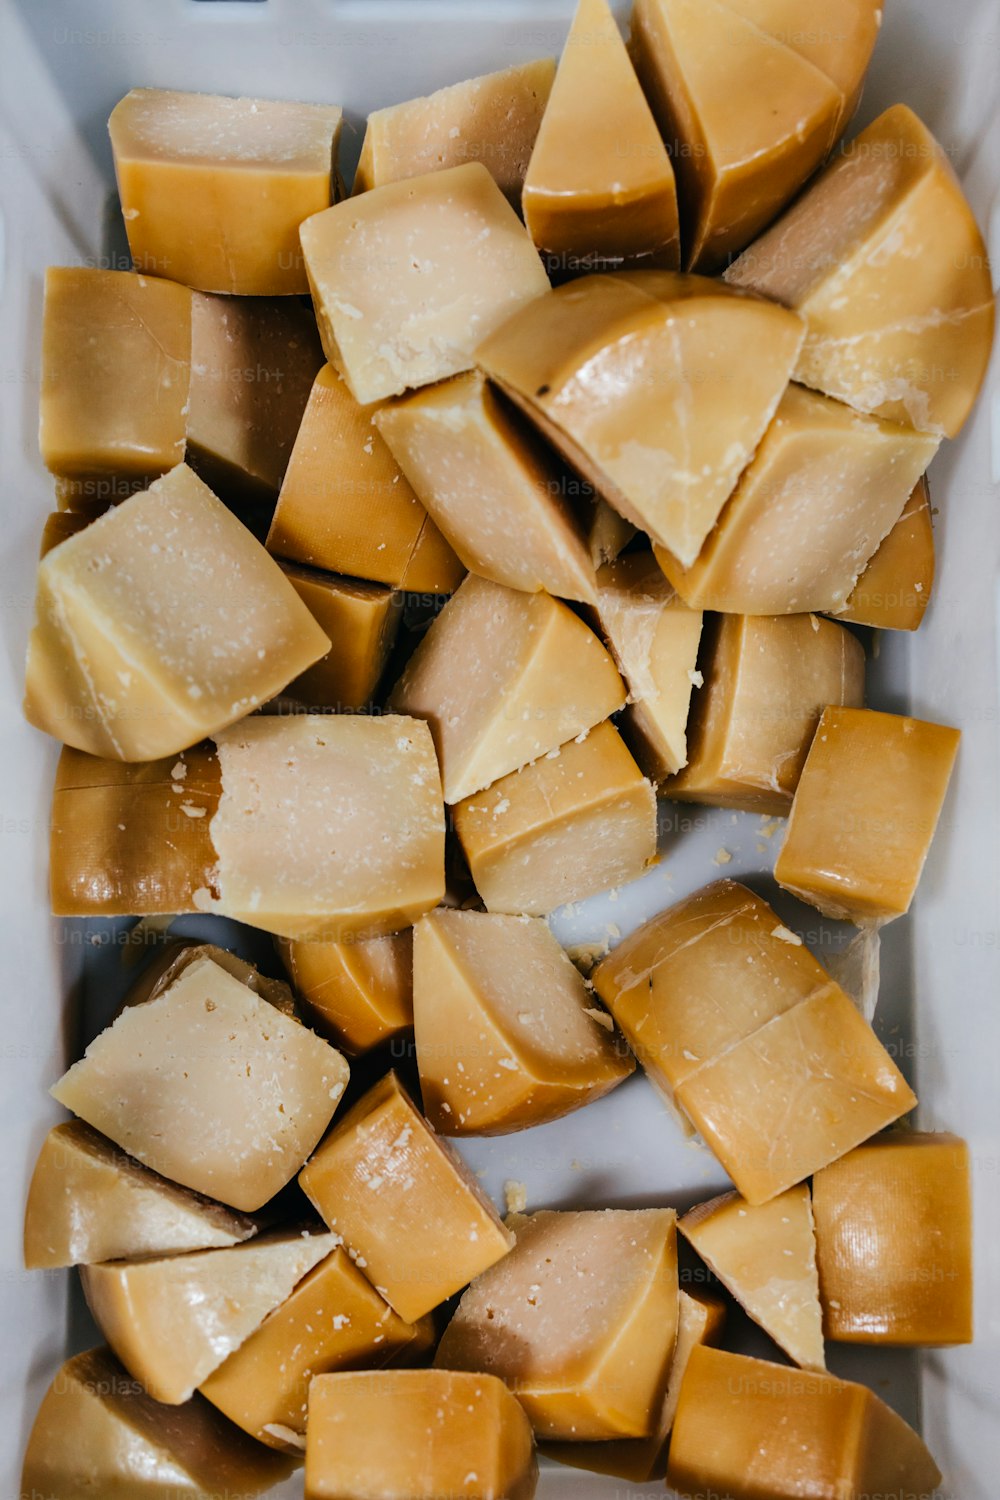 전통적인 치즈 및 유제품 생산 공장의 세부 사항. 포장 준비가 된 얇게 썬 맛있는 치즈 조각.